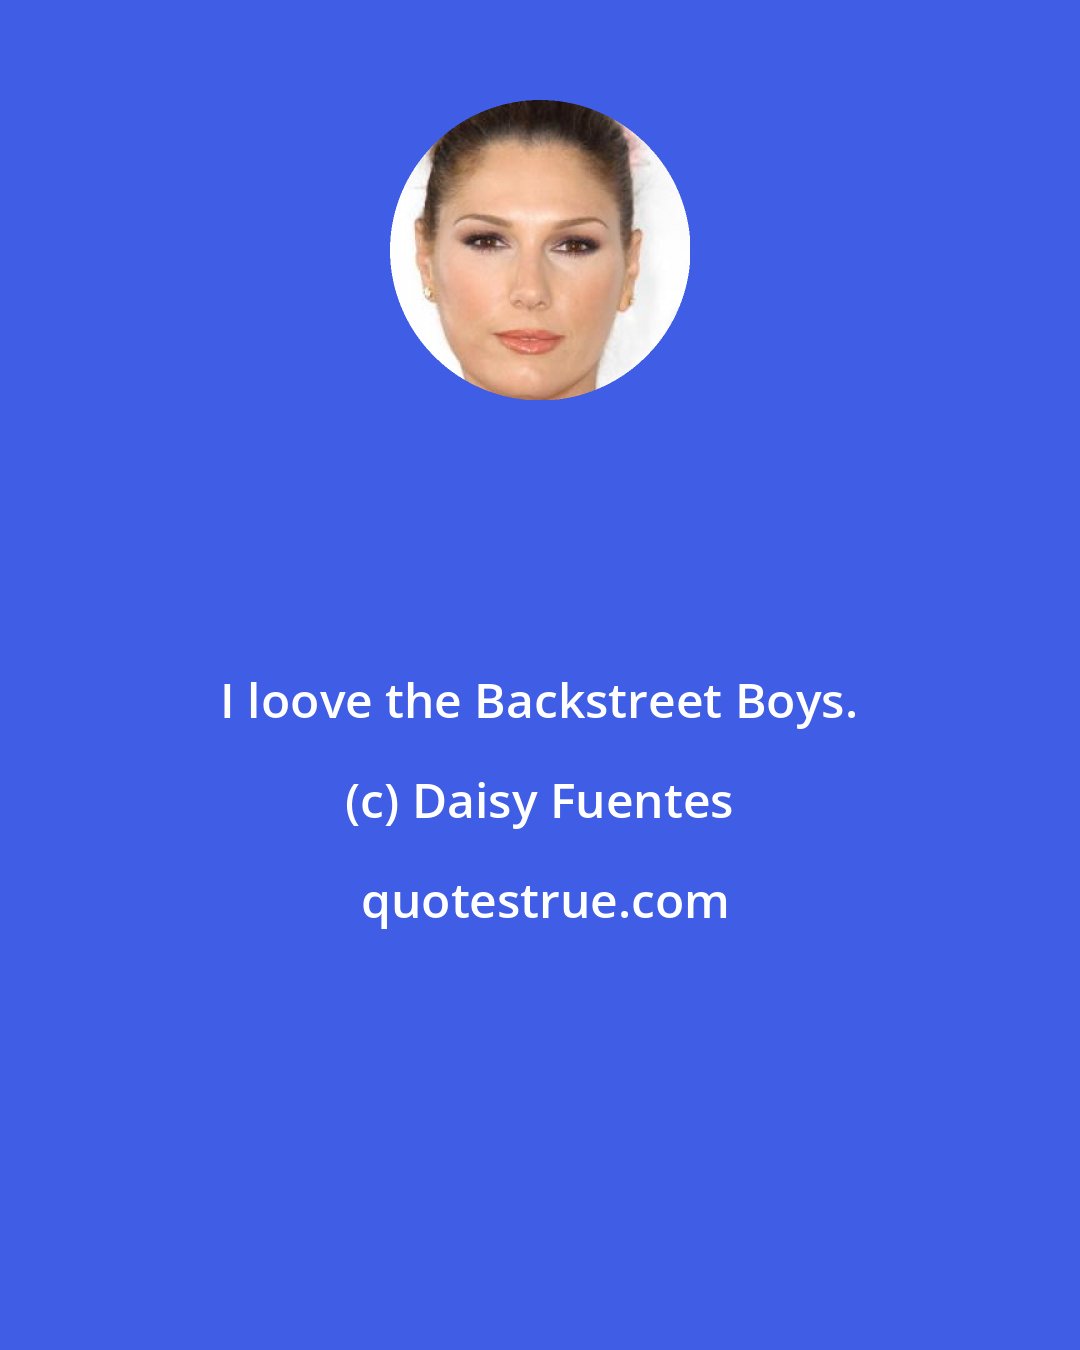 Daisy Fuentes: I loove the Backstreet Boys.